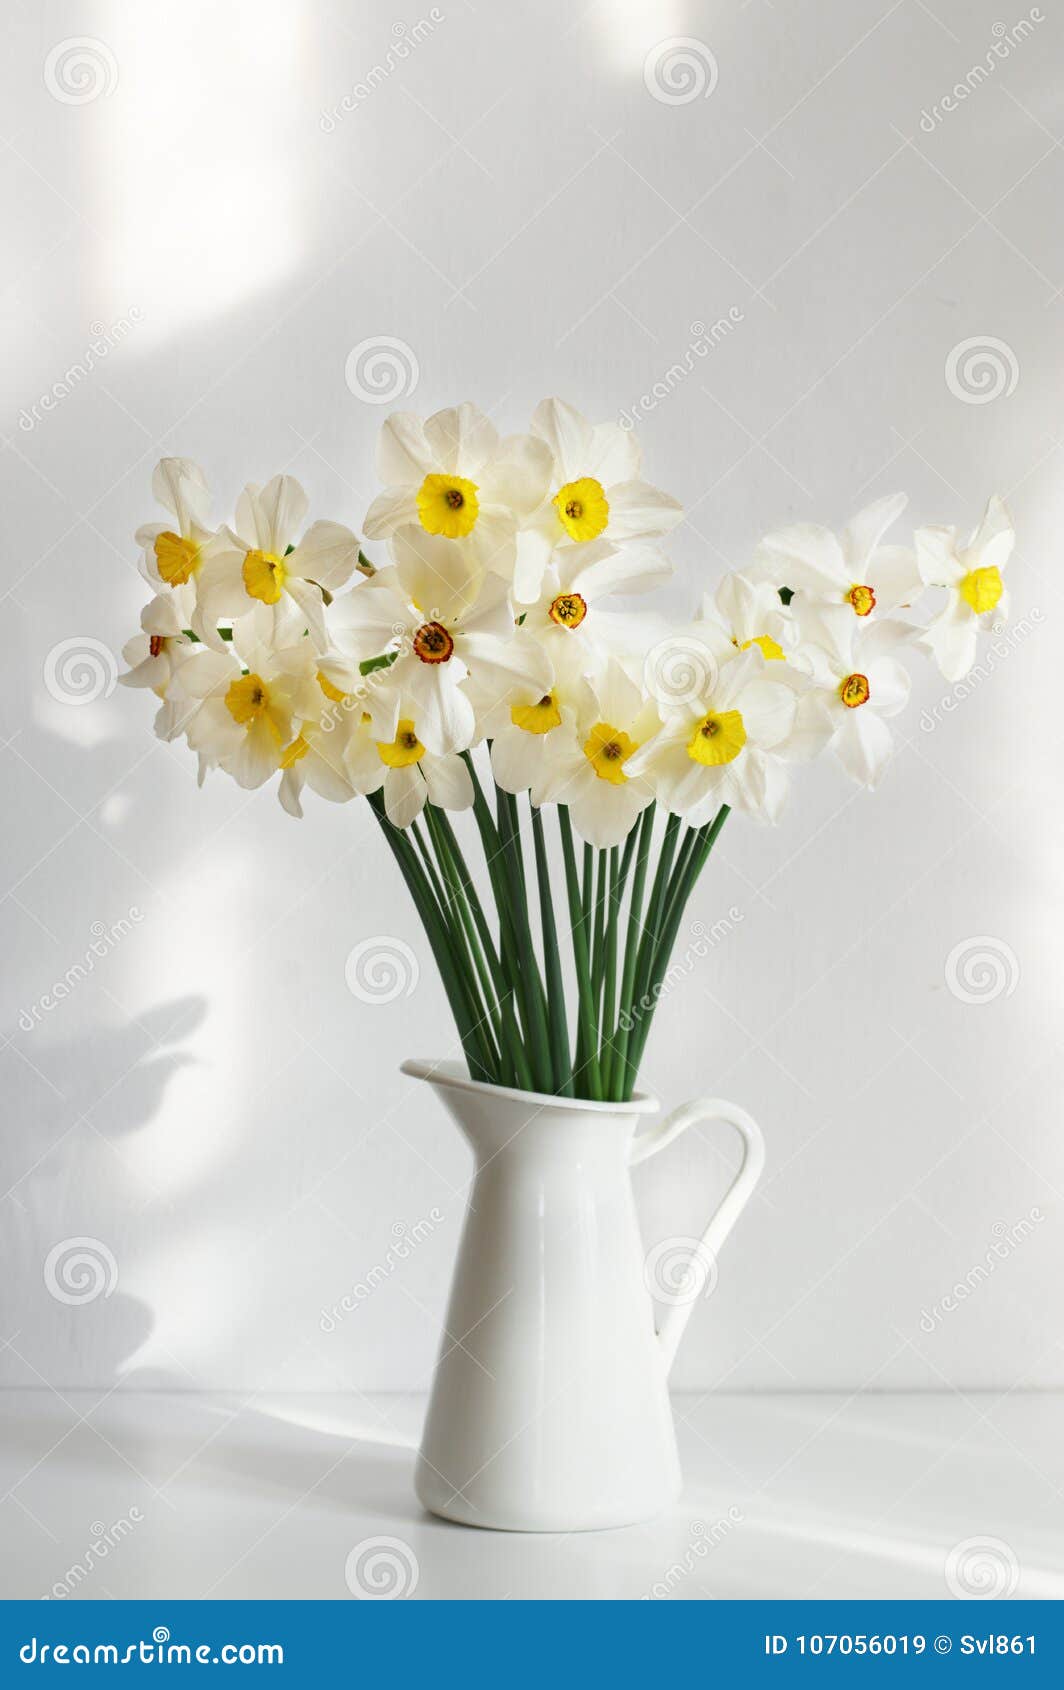 Bouquet du narcisse blanc image stock. Image du sunlight - 107056019